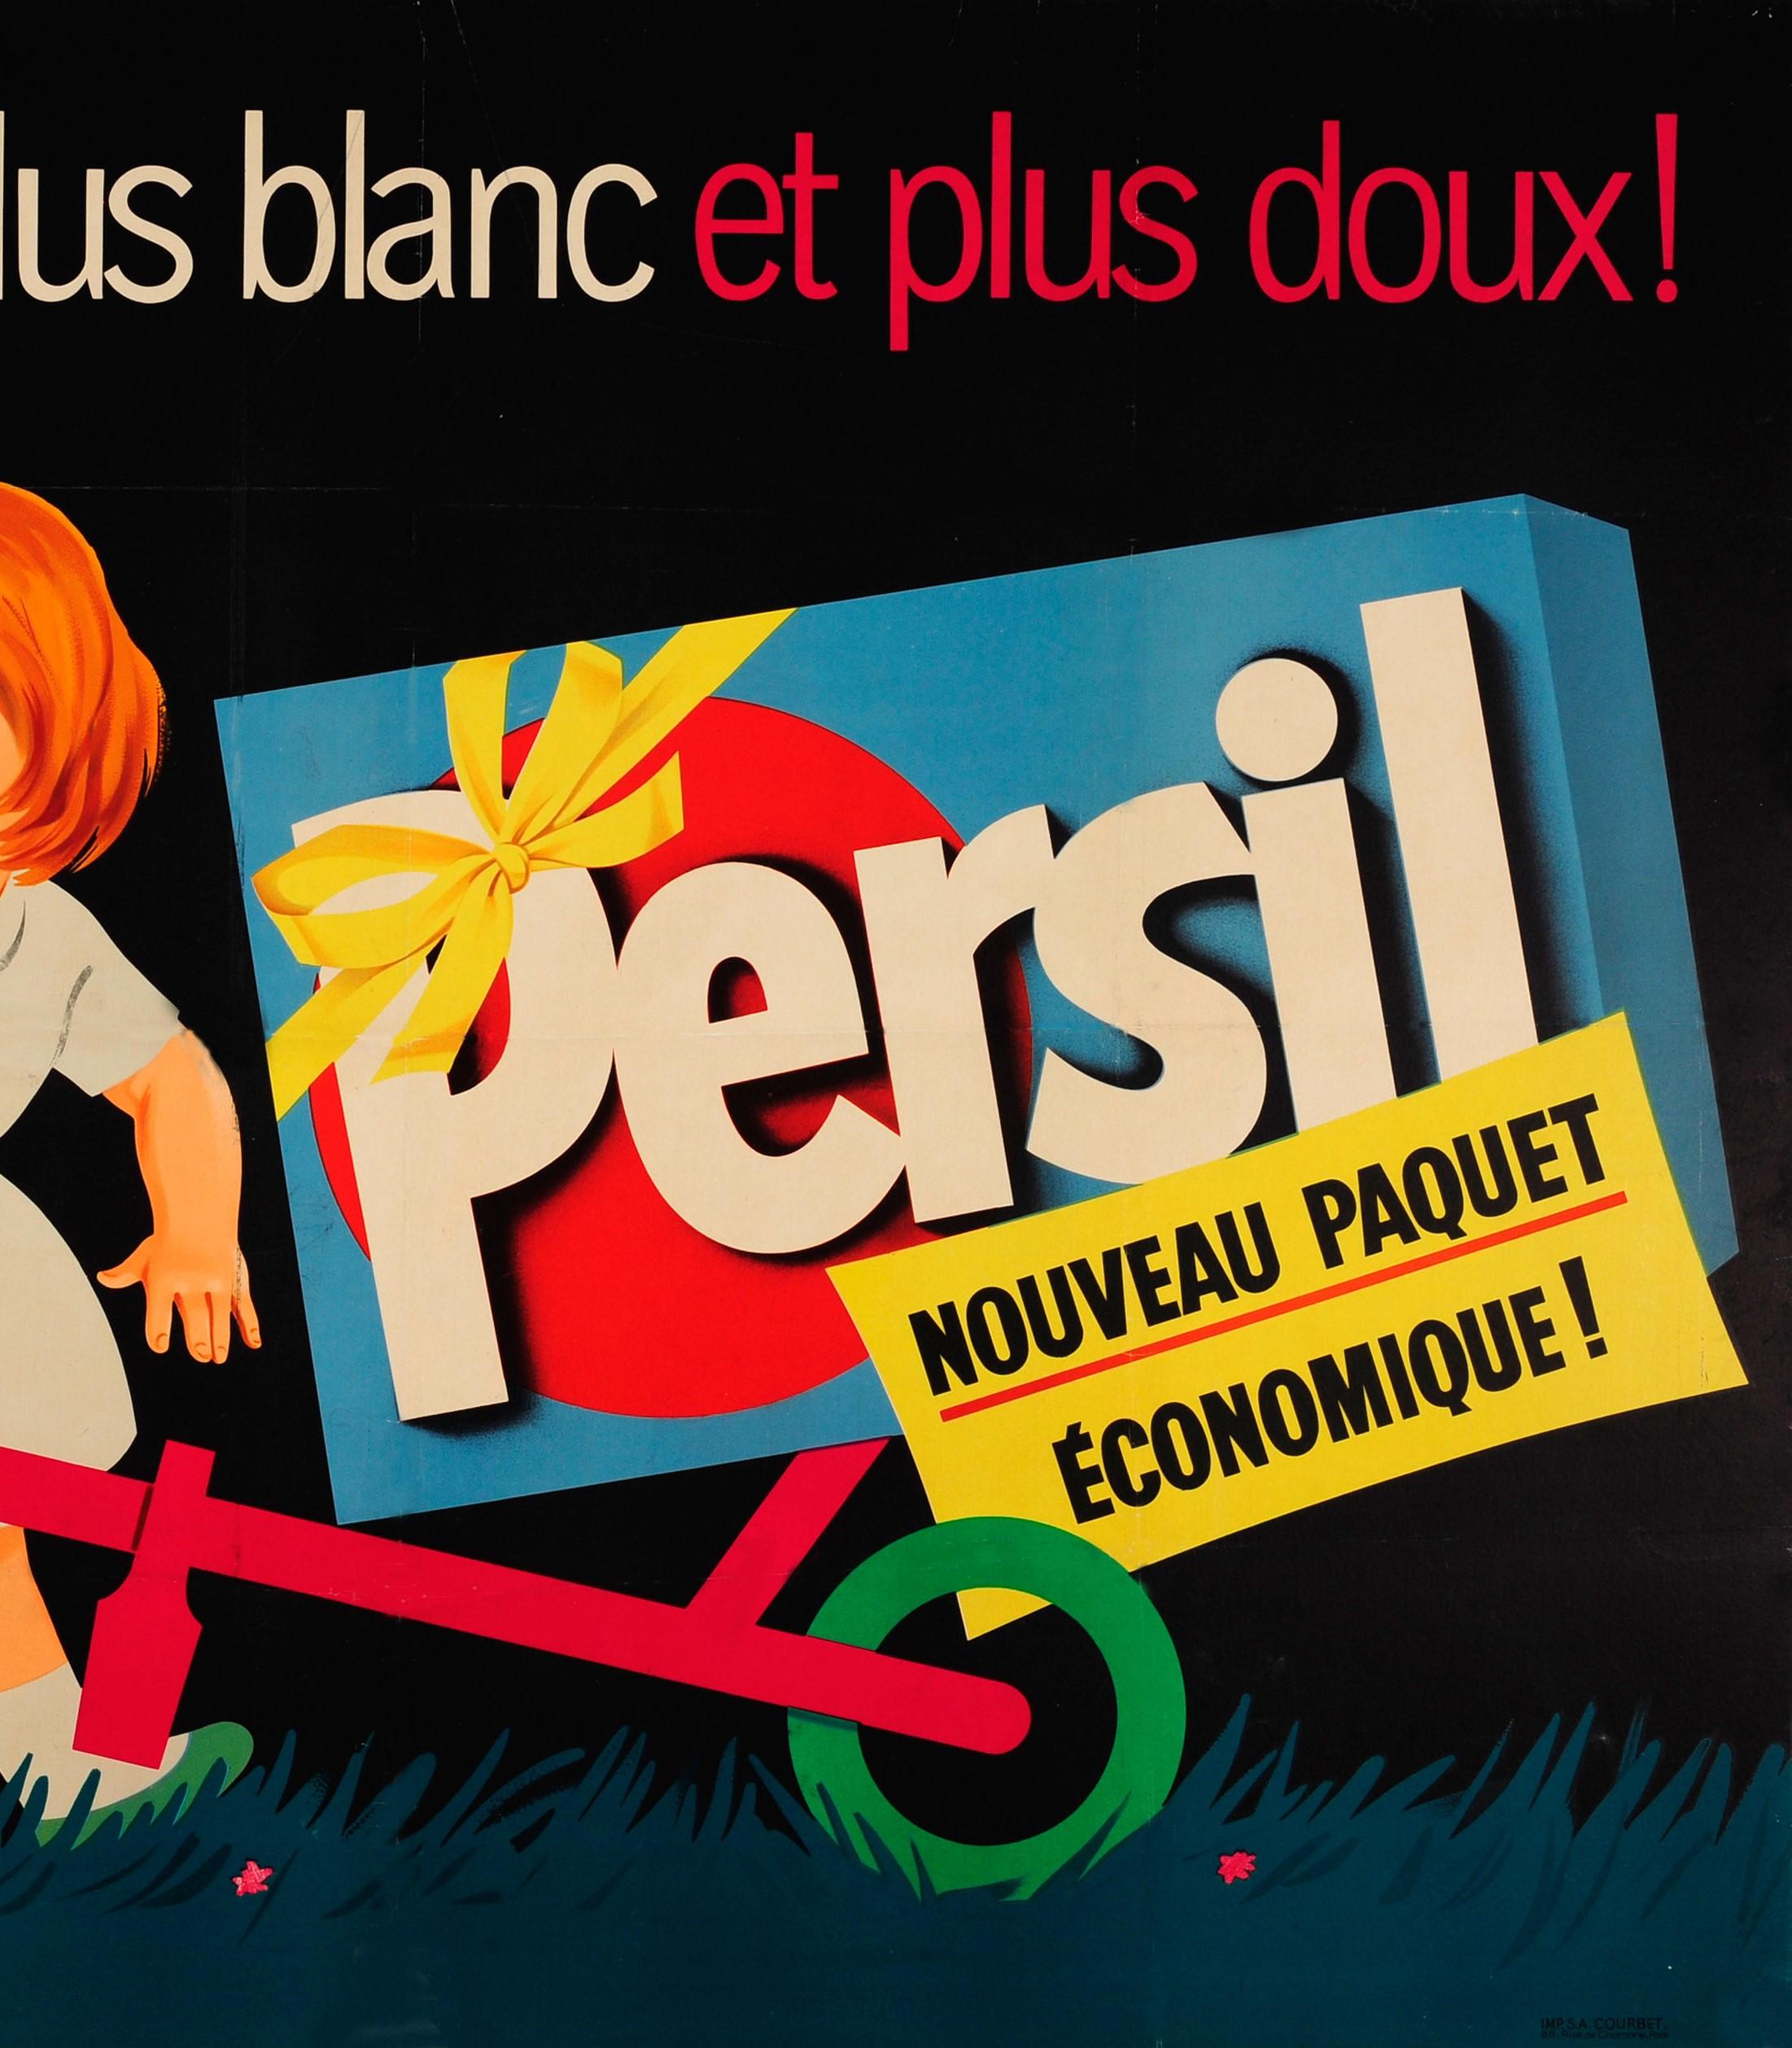 Français Grande affiche publicitaire française d'origine Persil lave plus blanc... et plus doux en vente